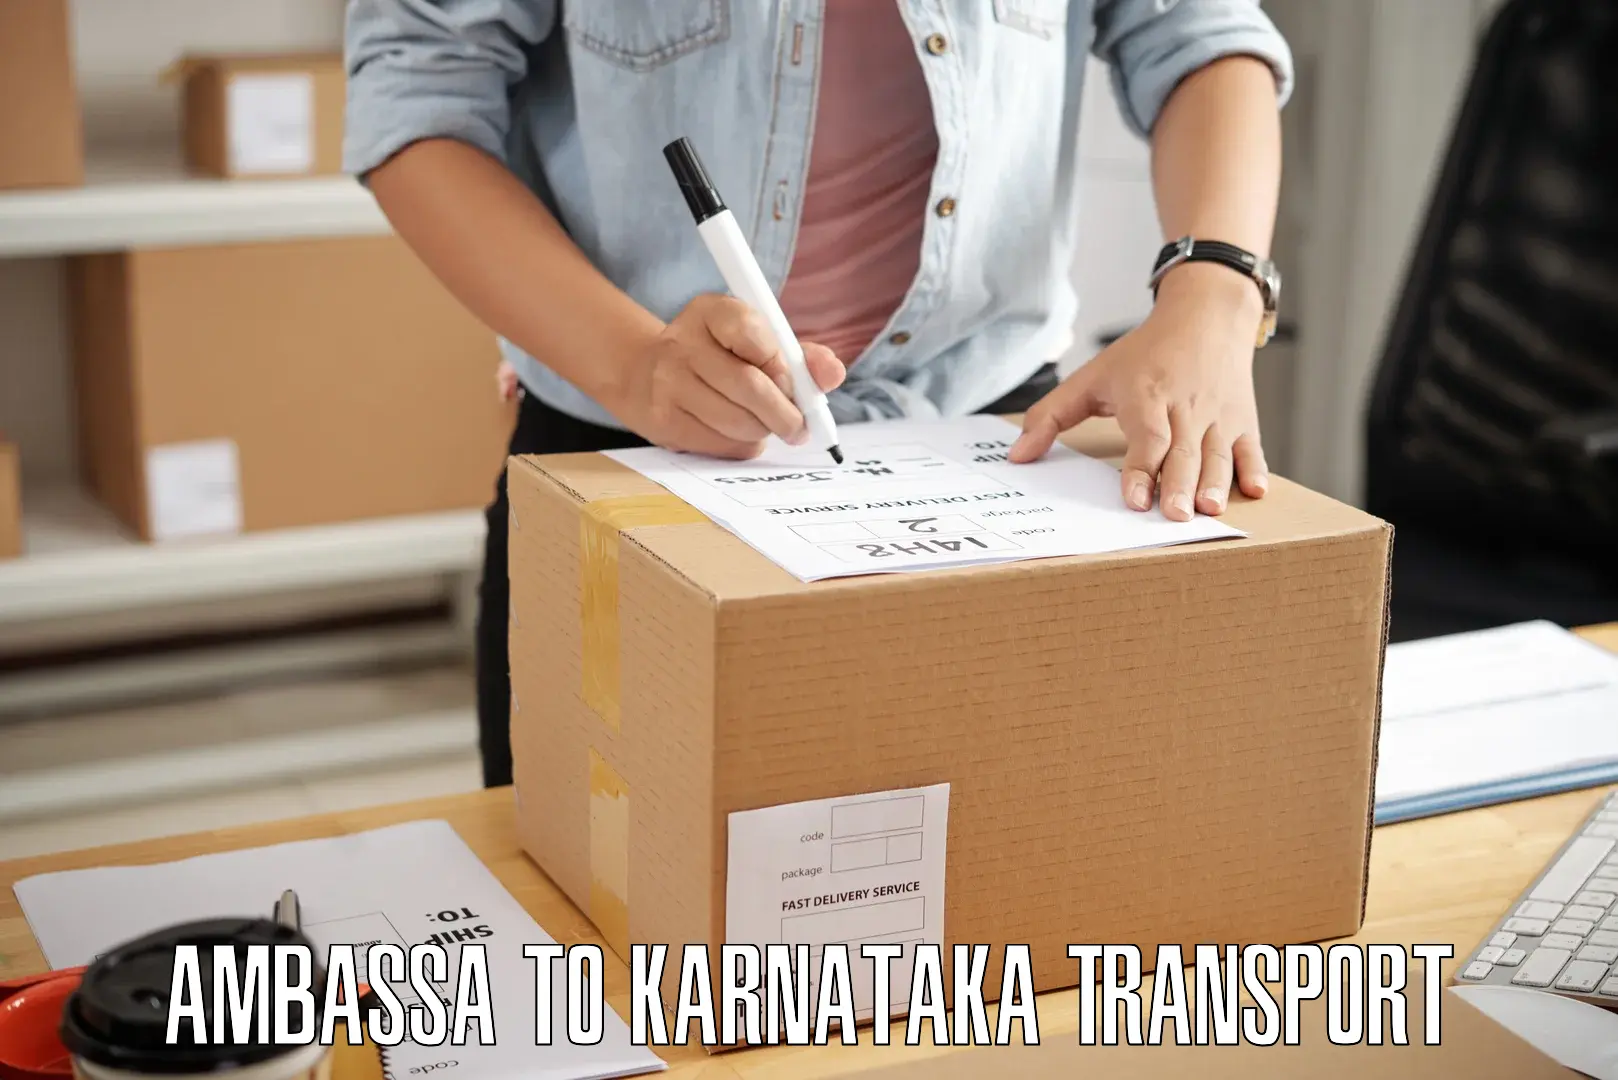 Transport in sharing Ambassa to Karnataka